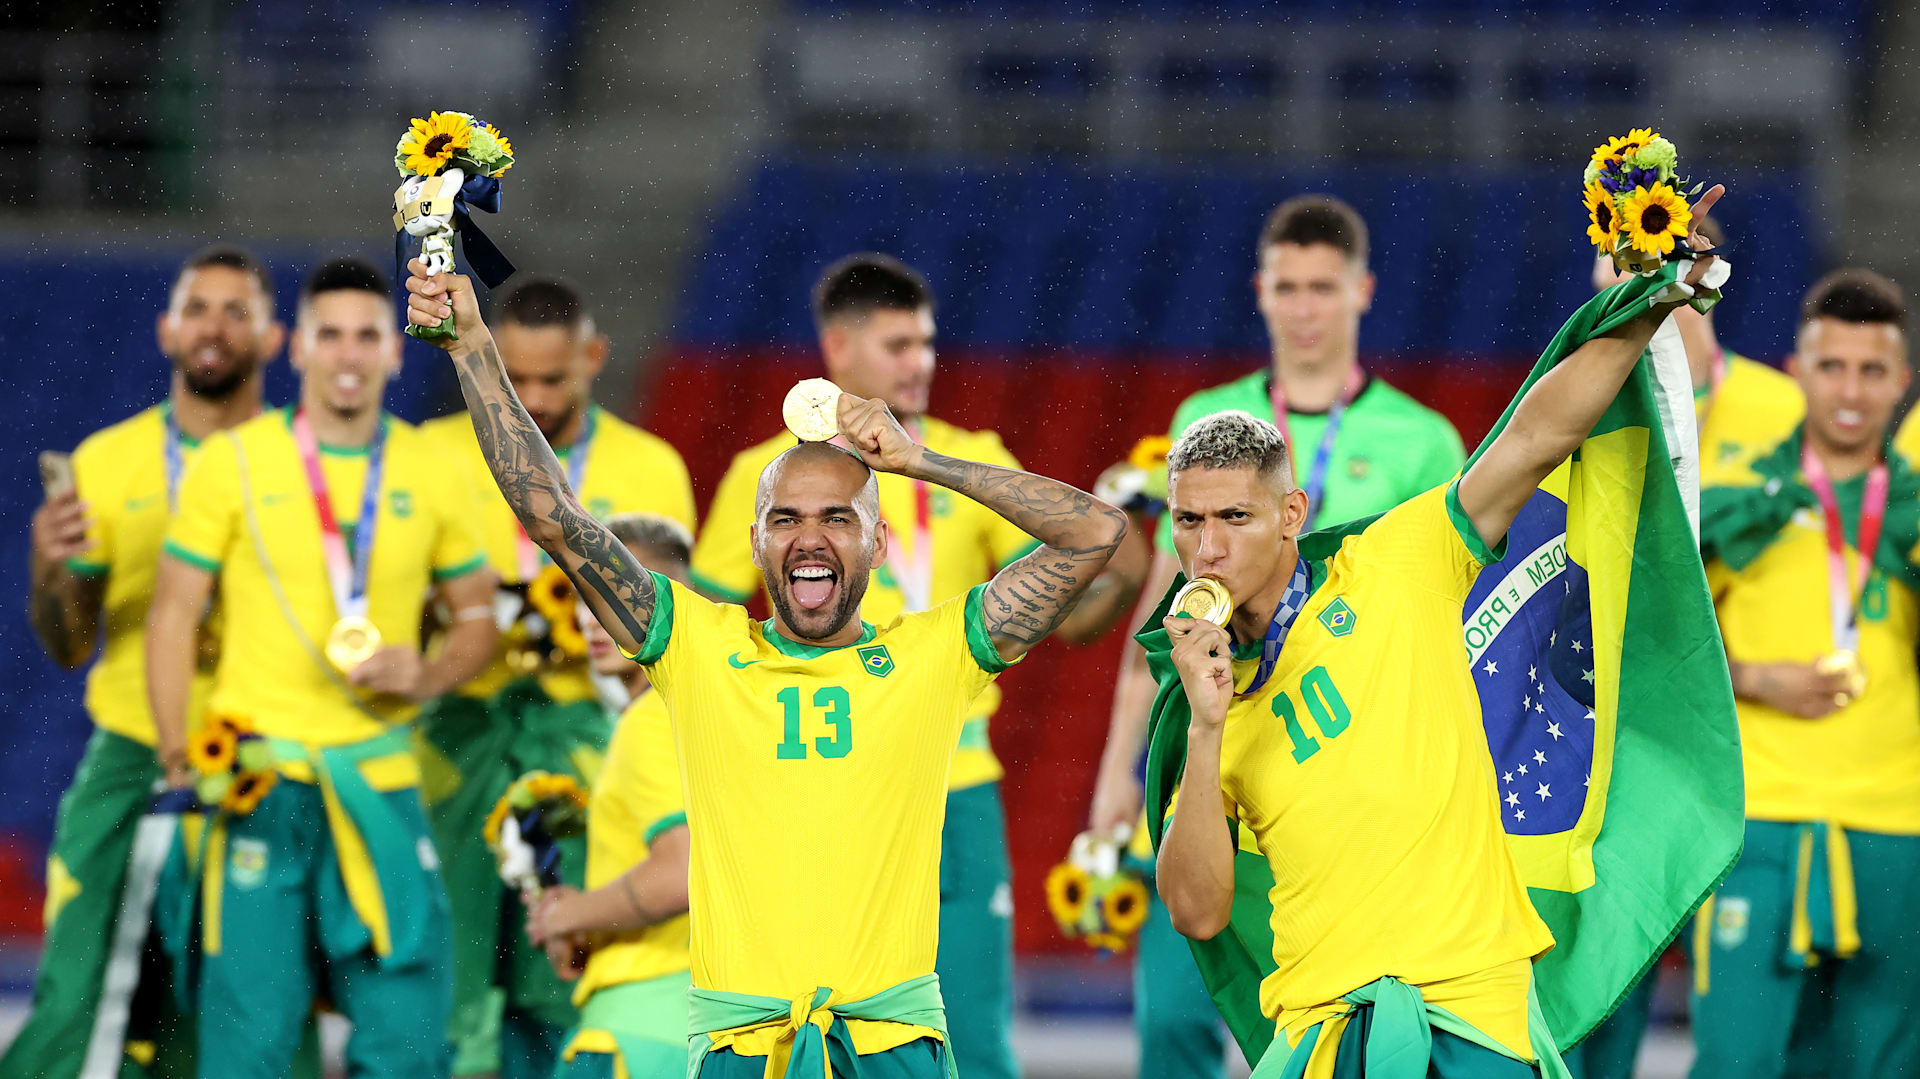 Campeões Olímpicos de futebol: da Grã-Bretanha ao Brasil